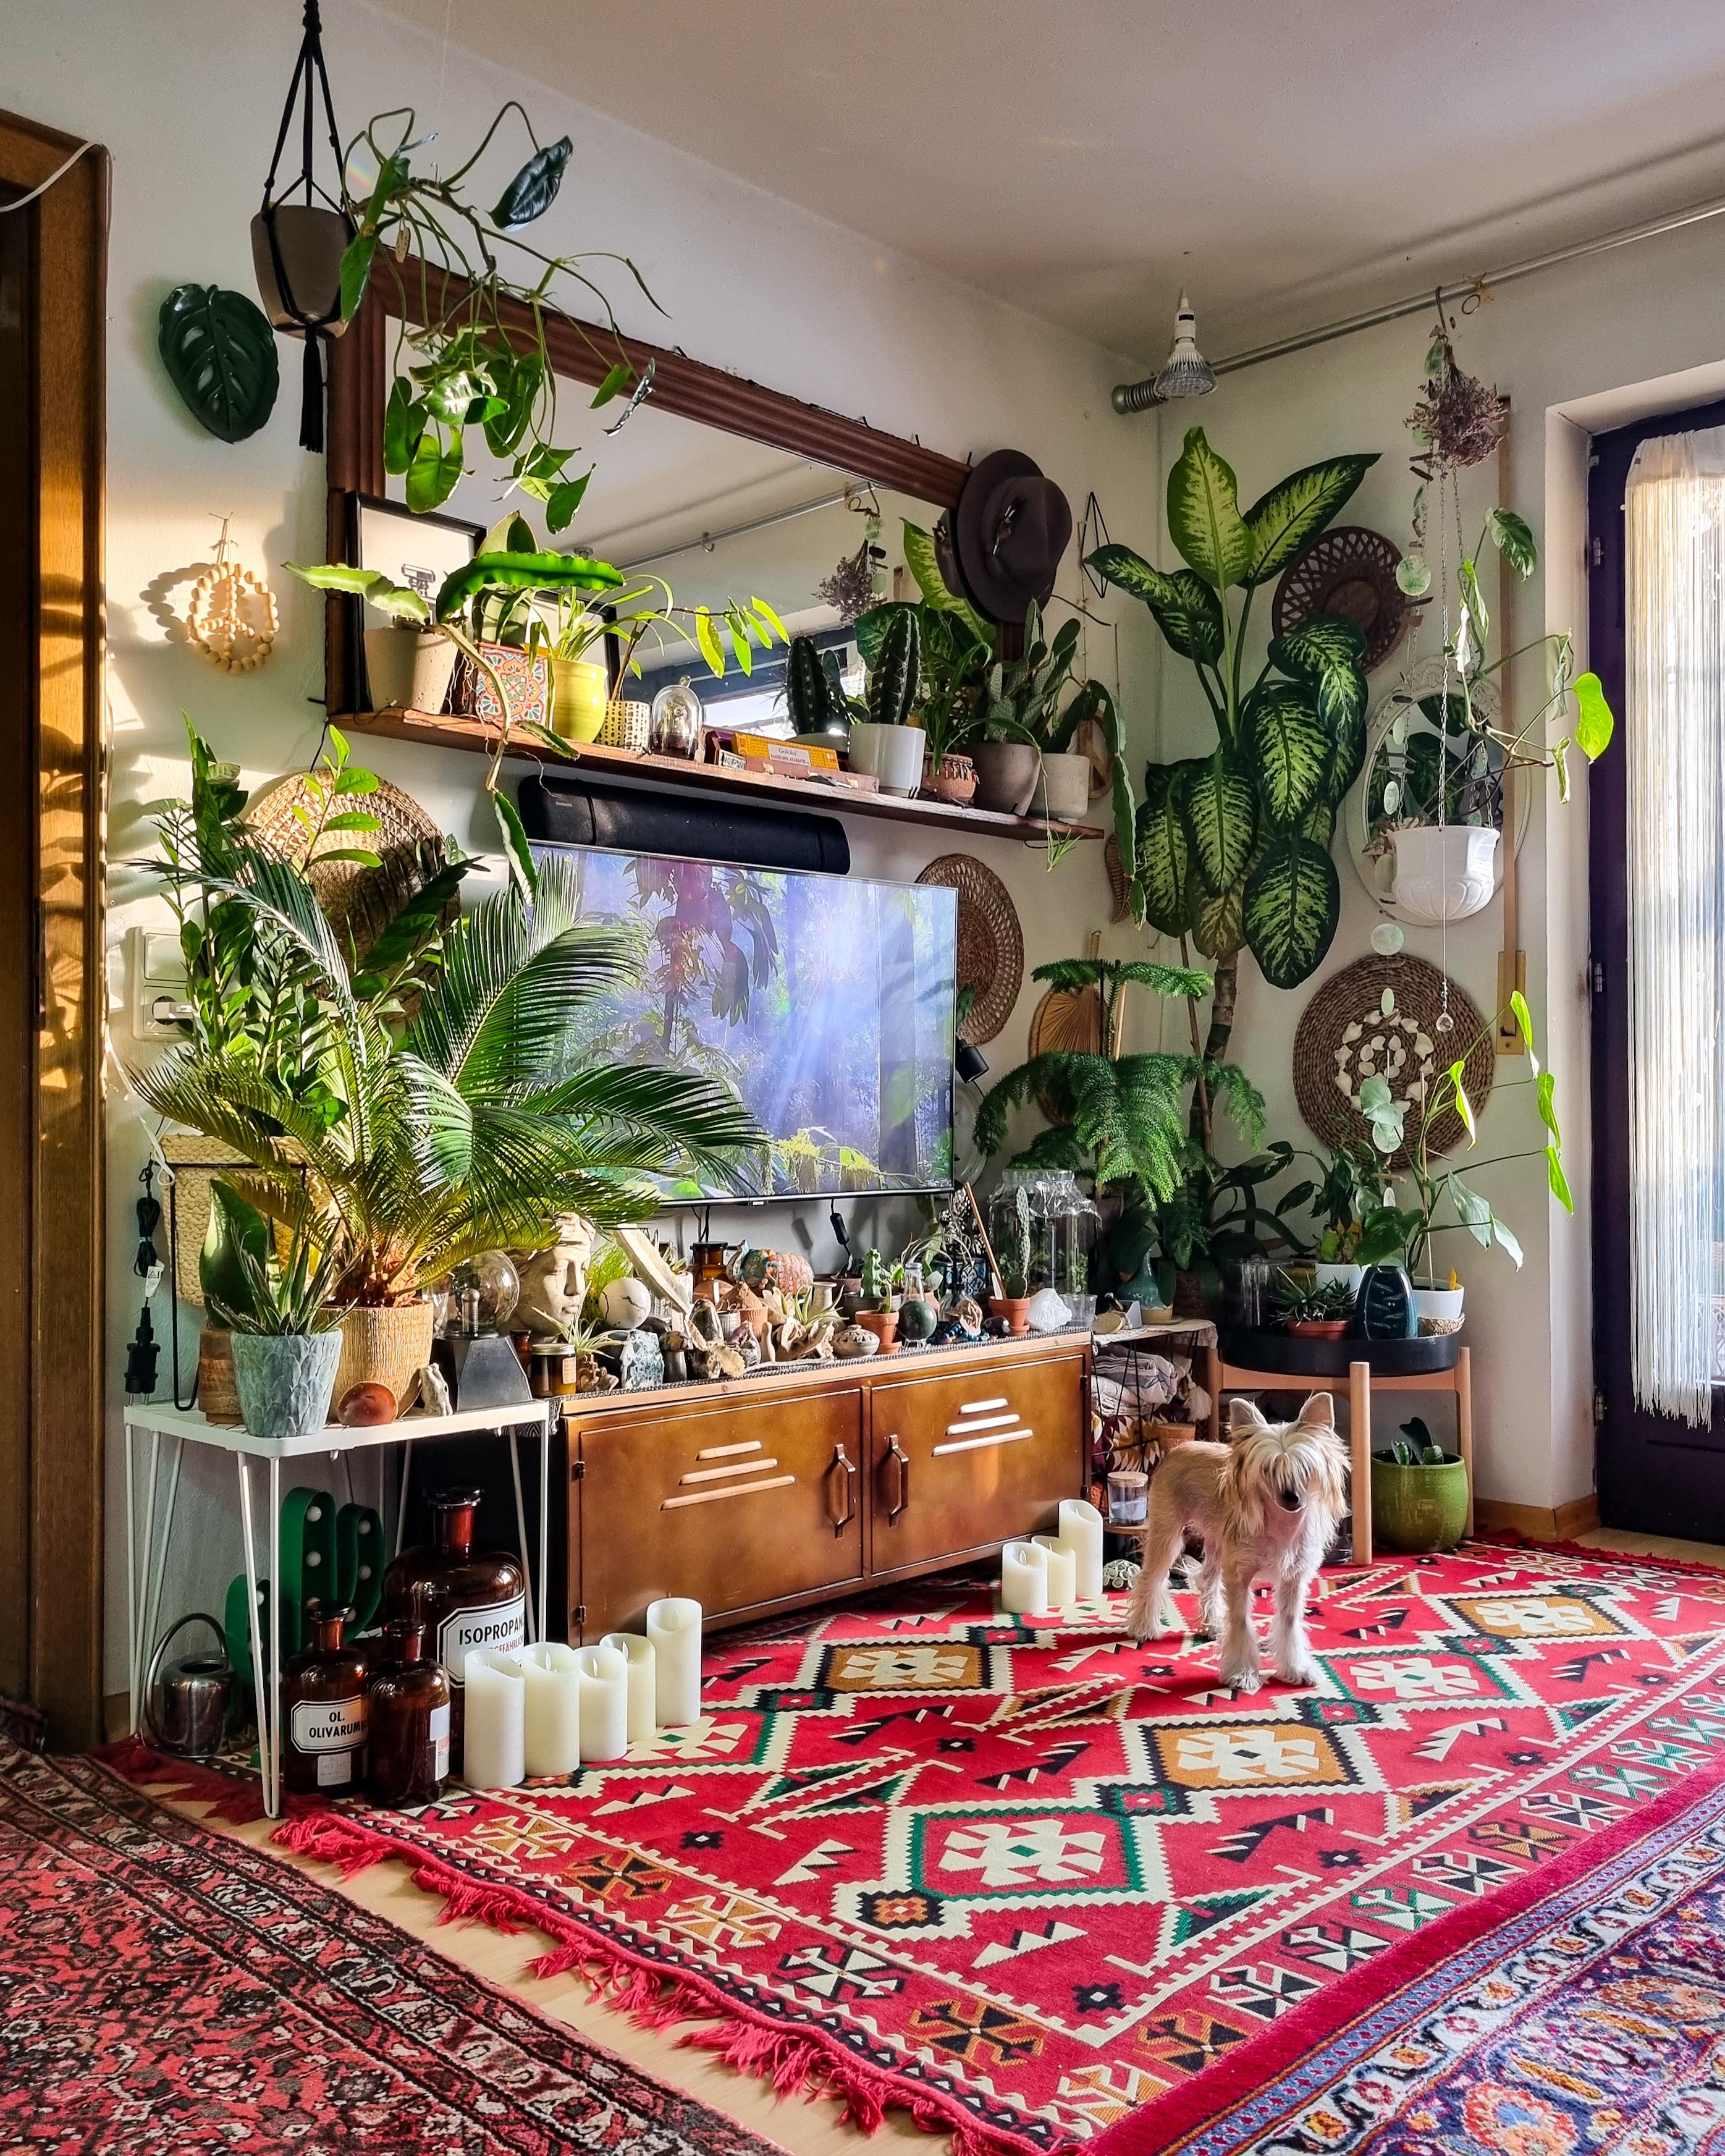 Wochenende 🫶🏽 #Wohnzimmer #Pflanzen #urbanjungle #Teppich #Spiegel #Kerzen #deko #boho #hippie #hygge #sideboard 